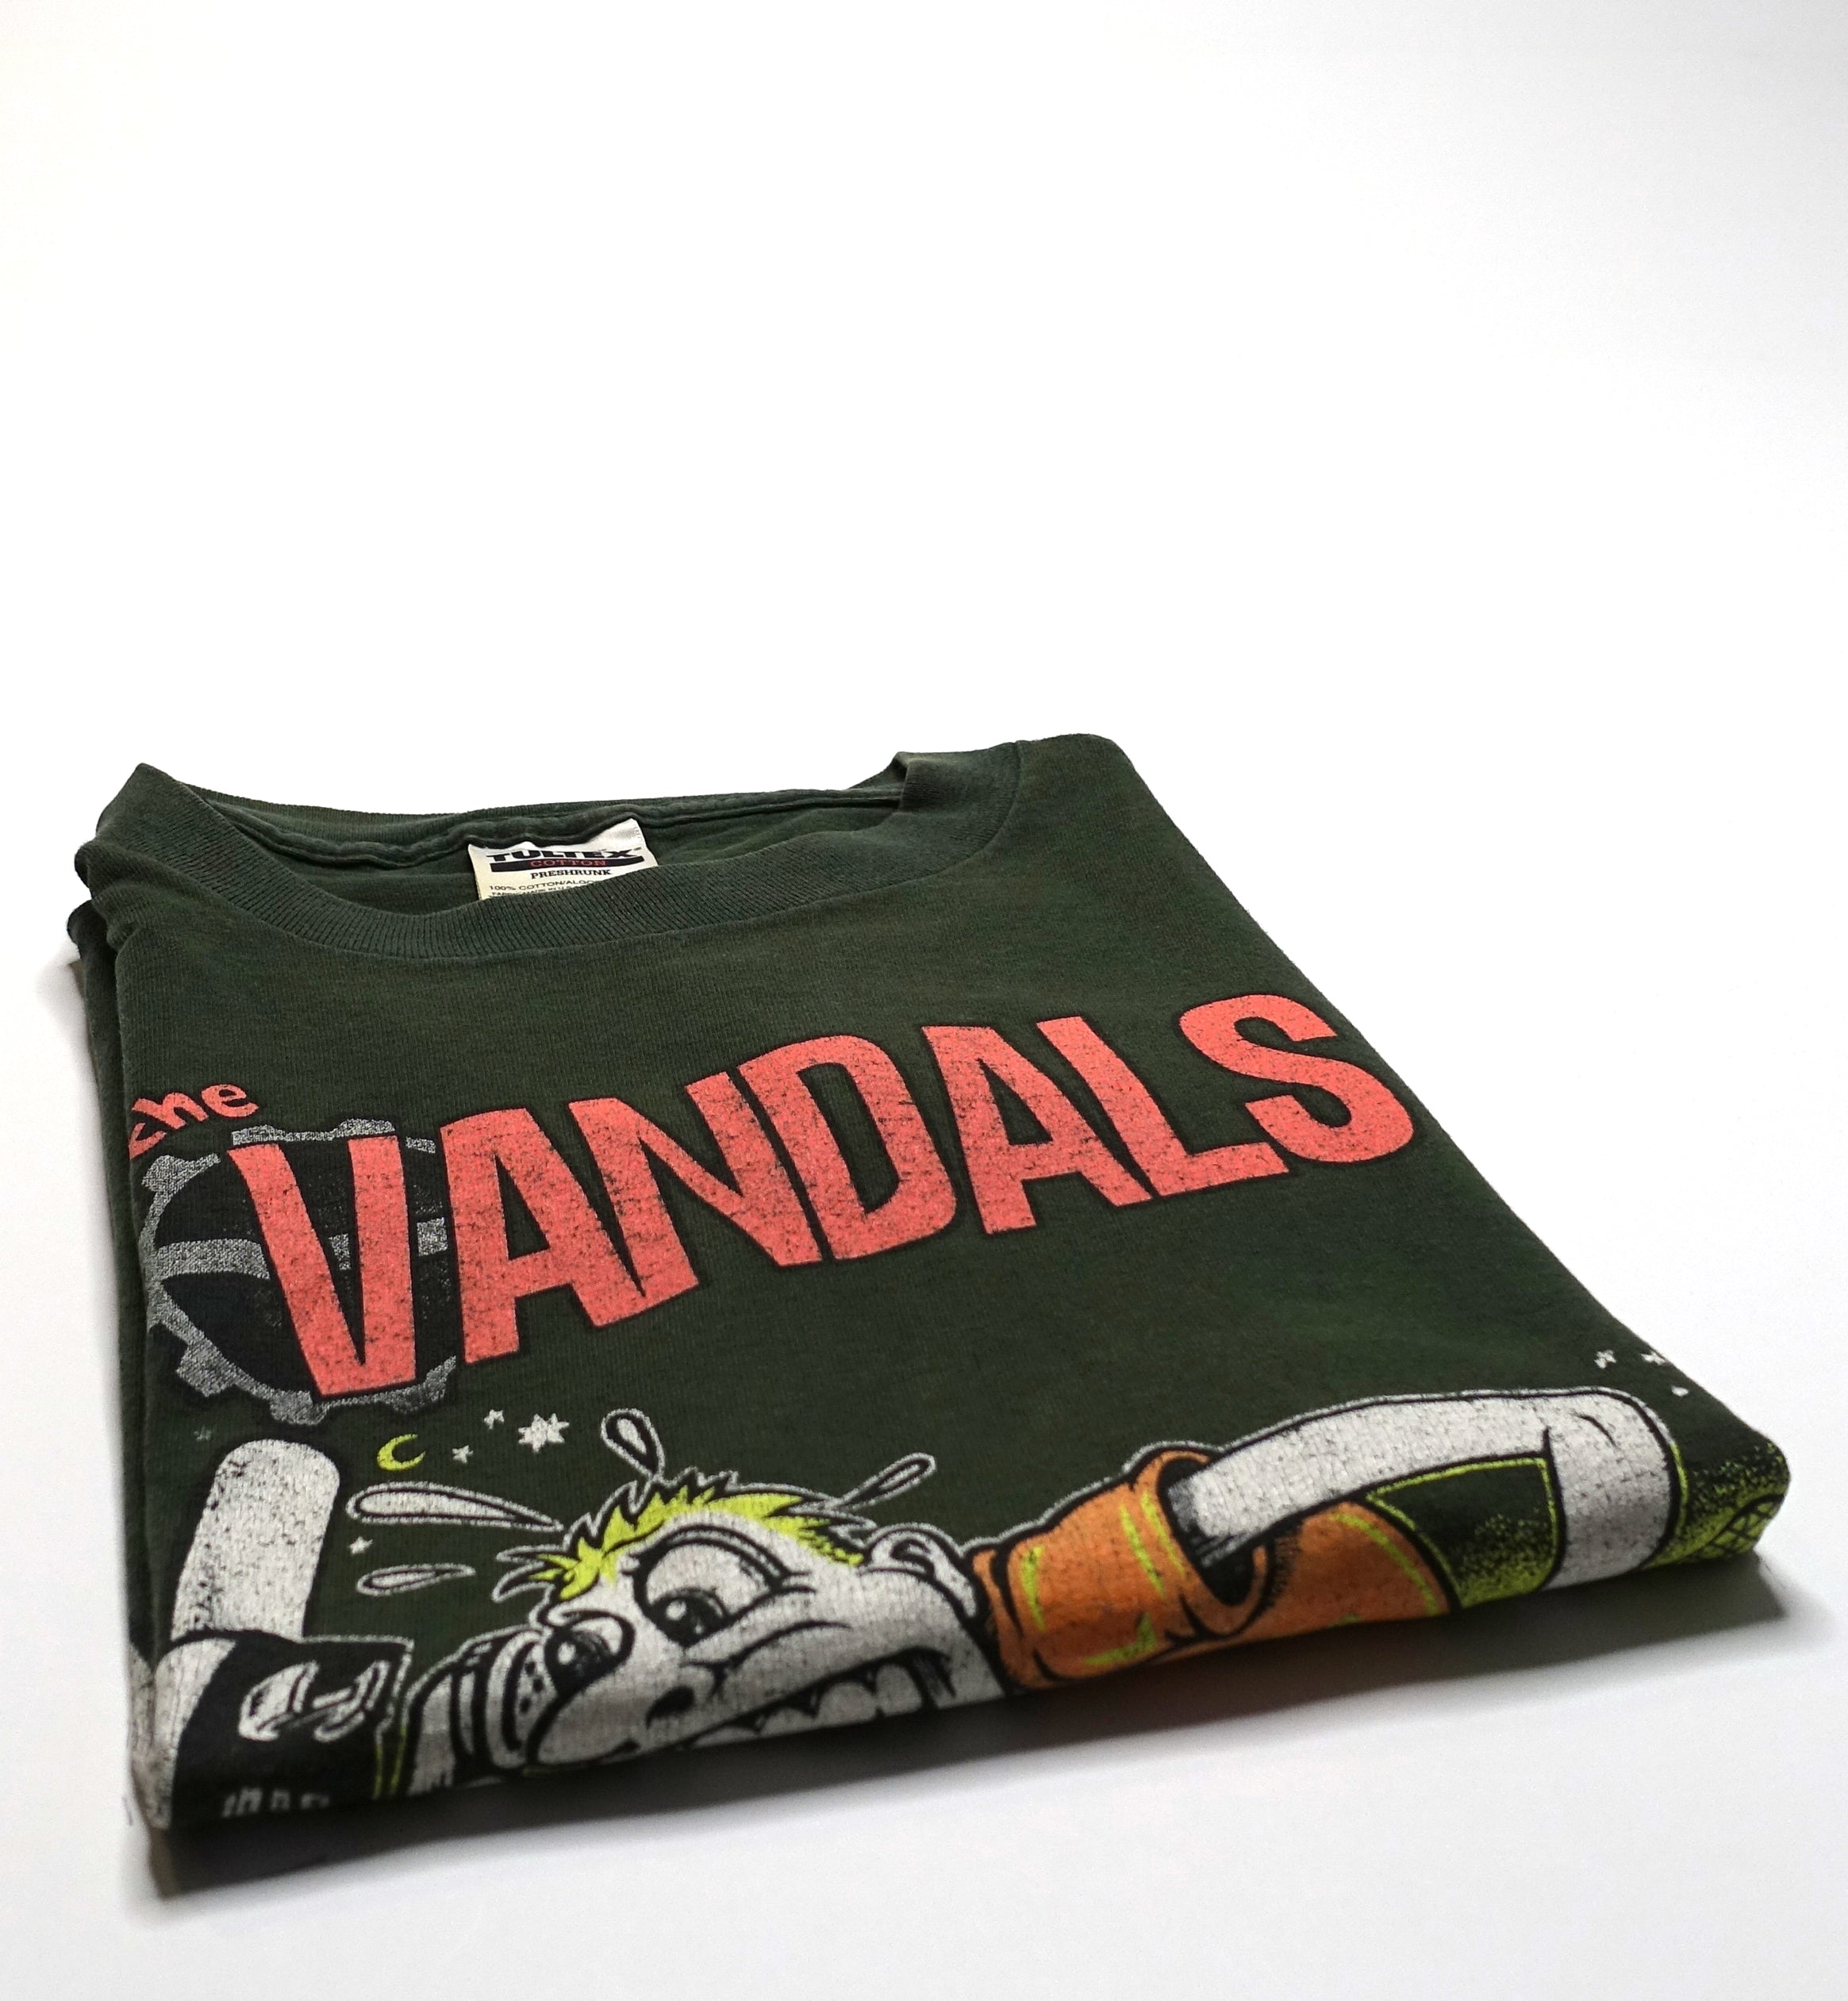 the Vandals - Live Fast Diarrhea 1995 Tour Shirt Size XL